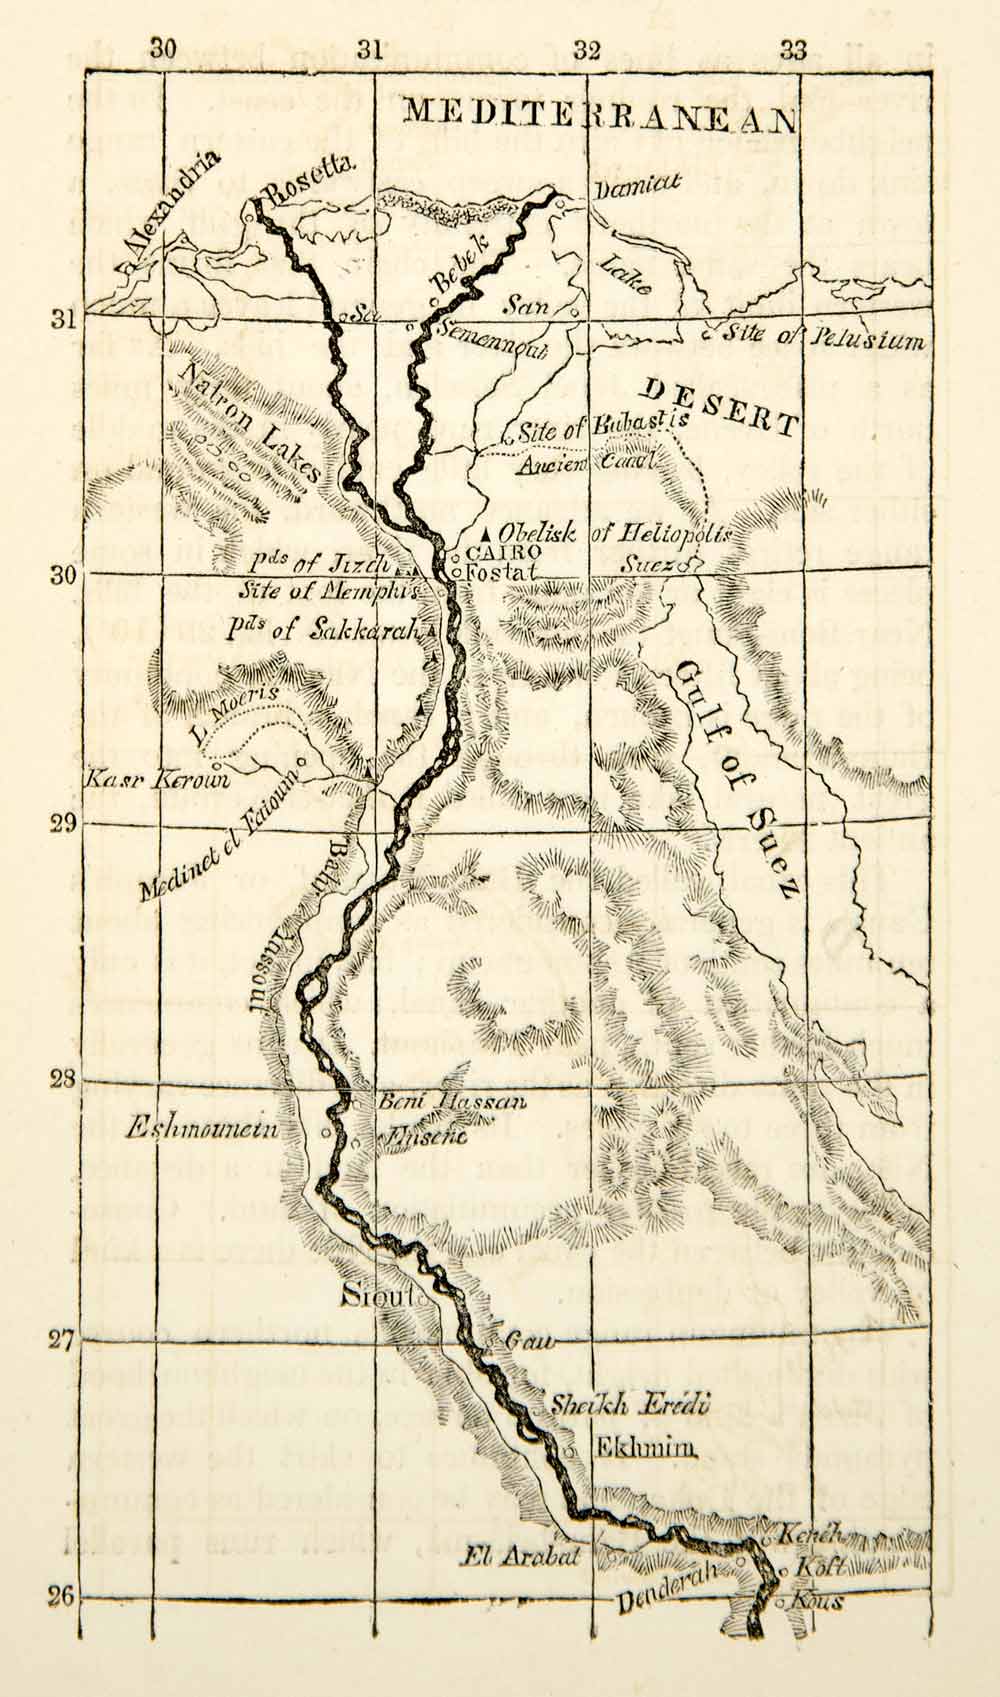 1832 Print Map Egypt Nile Valley Nubia Desert Suez Matron Alexandria Abu XGGD1